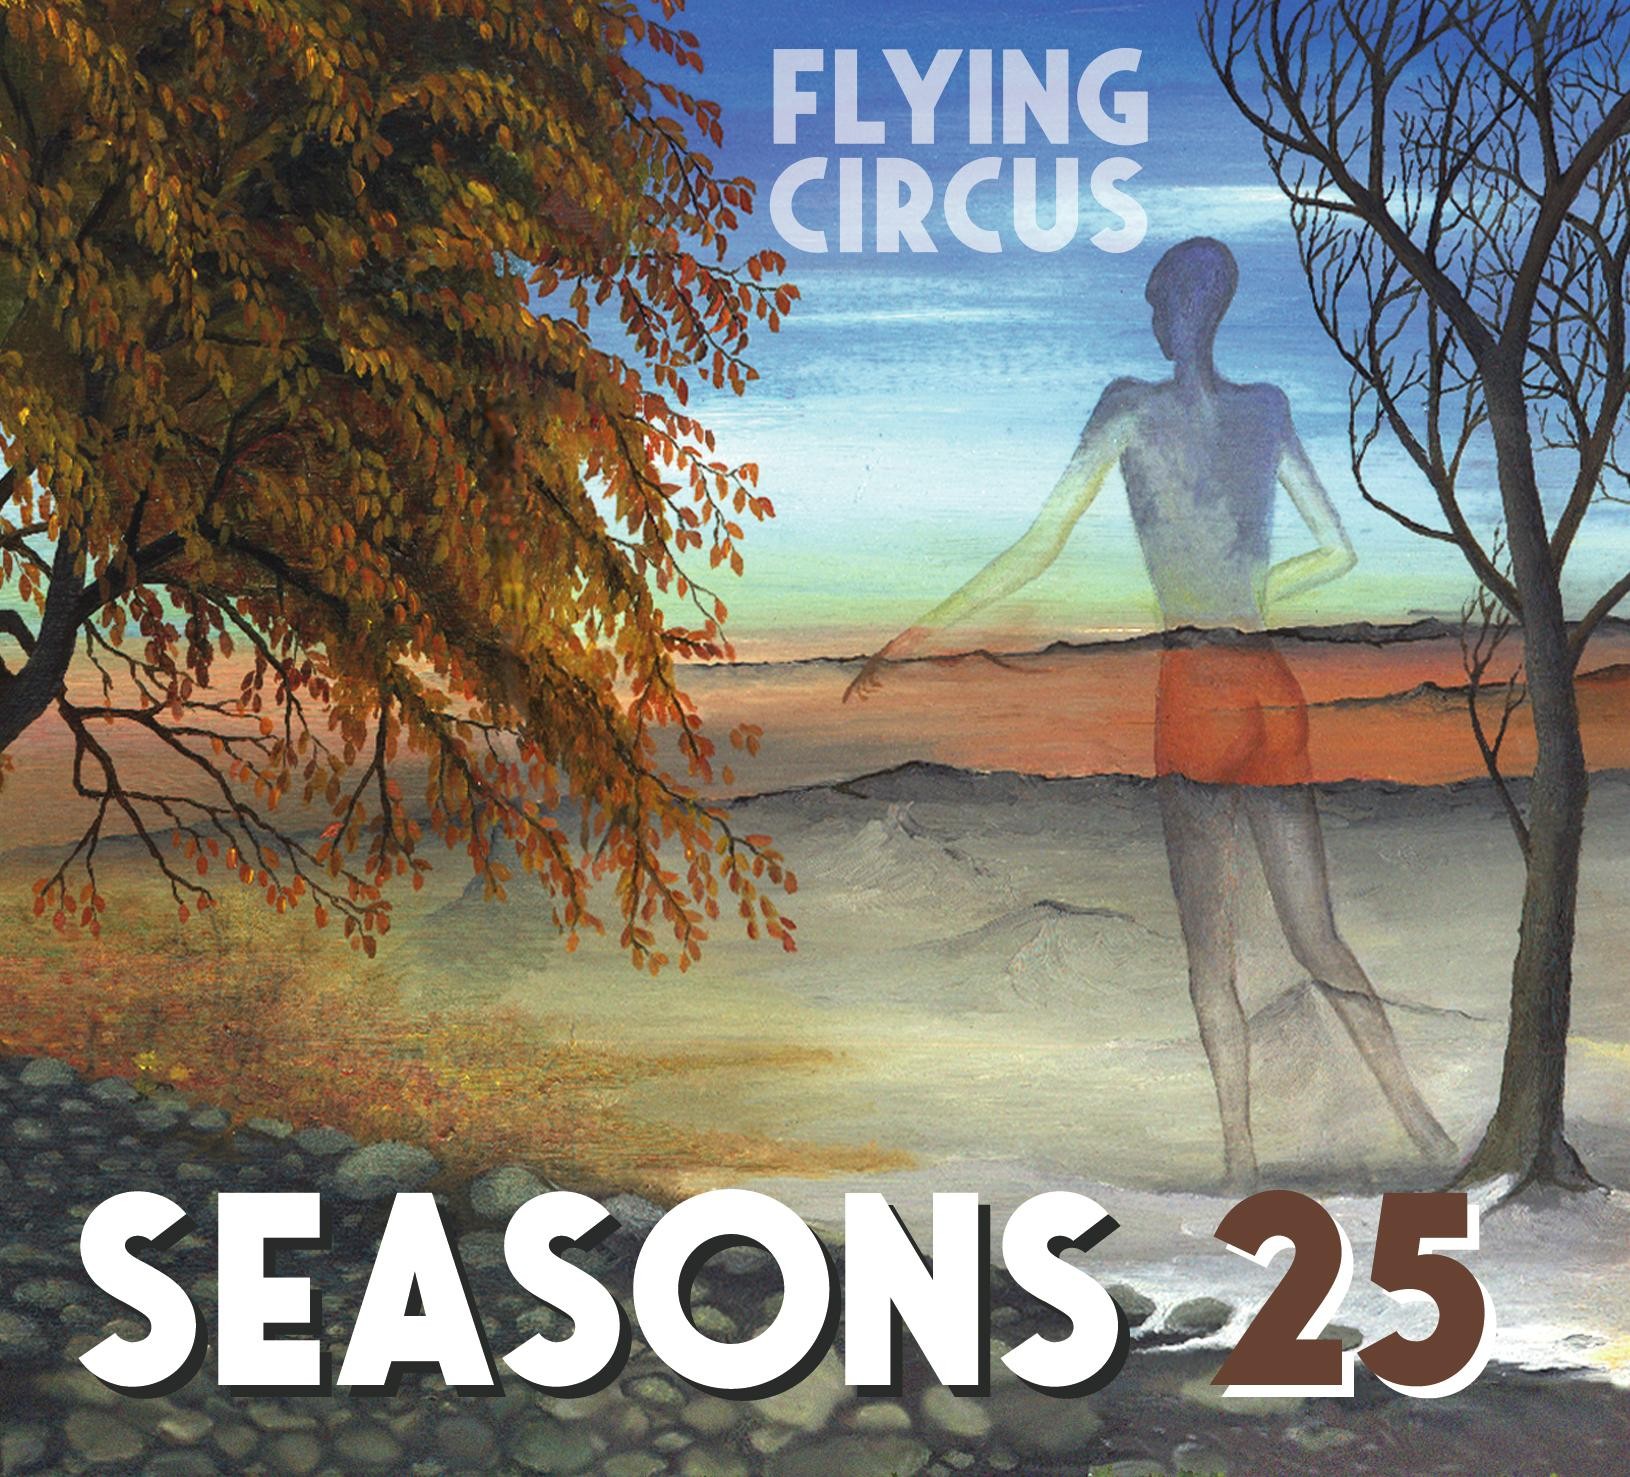 FLYNG CIRCUS – Seasons 25